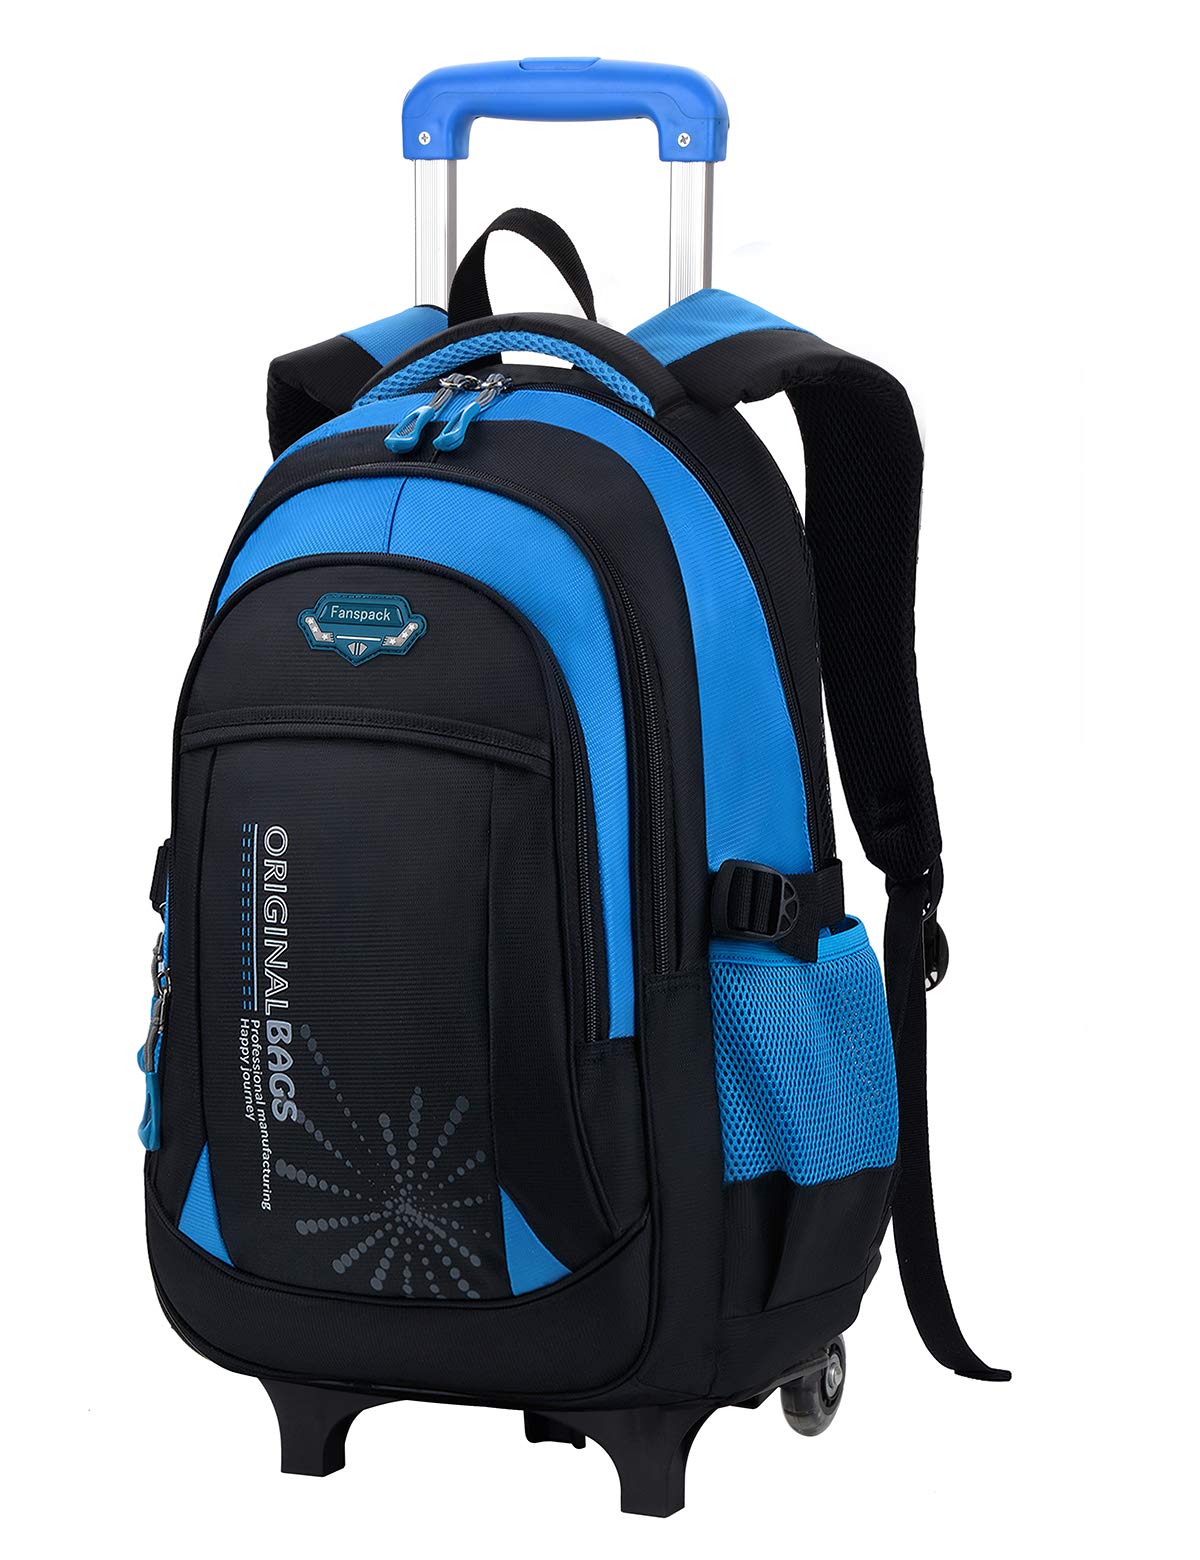 Waterproof Oxford School Backpack for Boys | Boys backpacks, Backpacks,  School backpacks